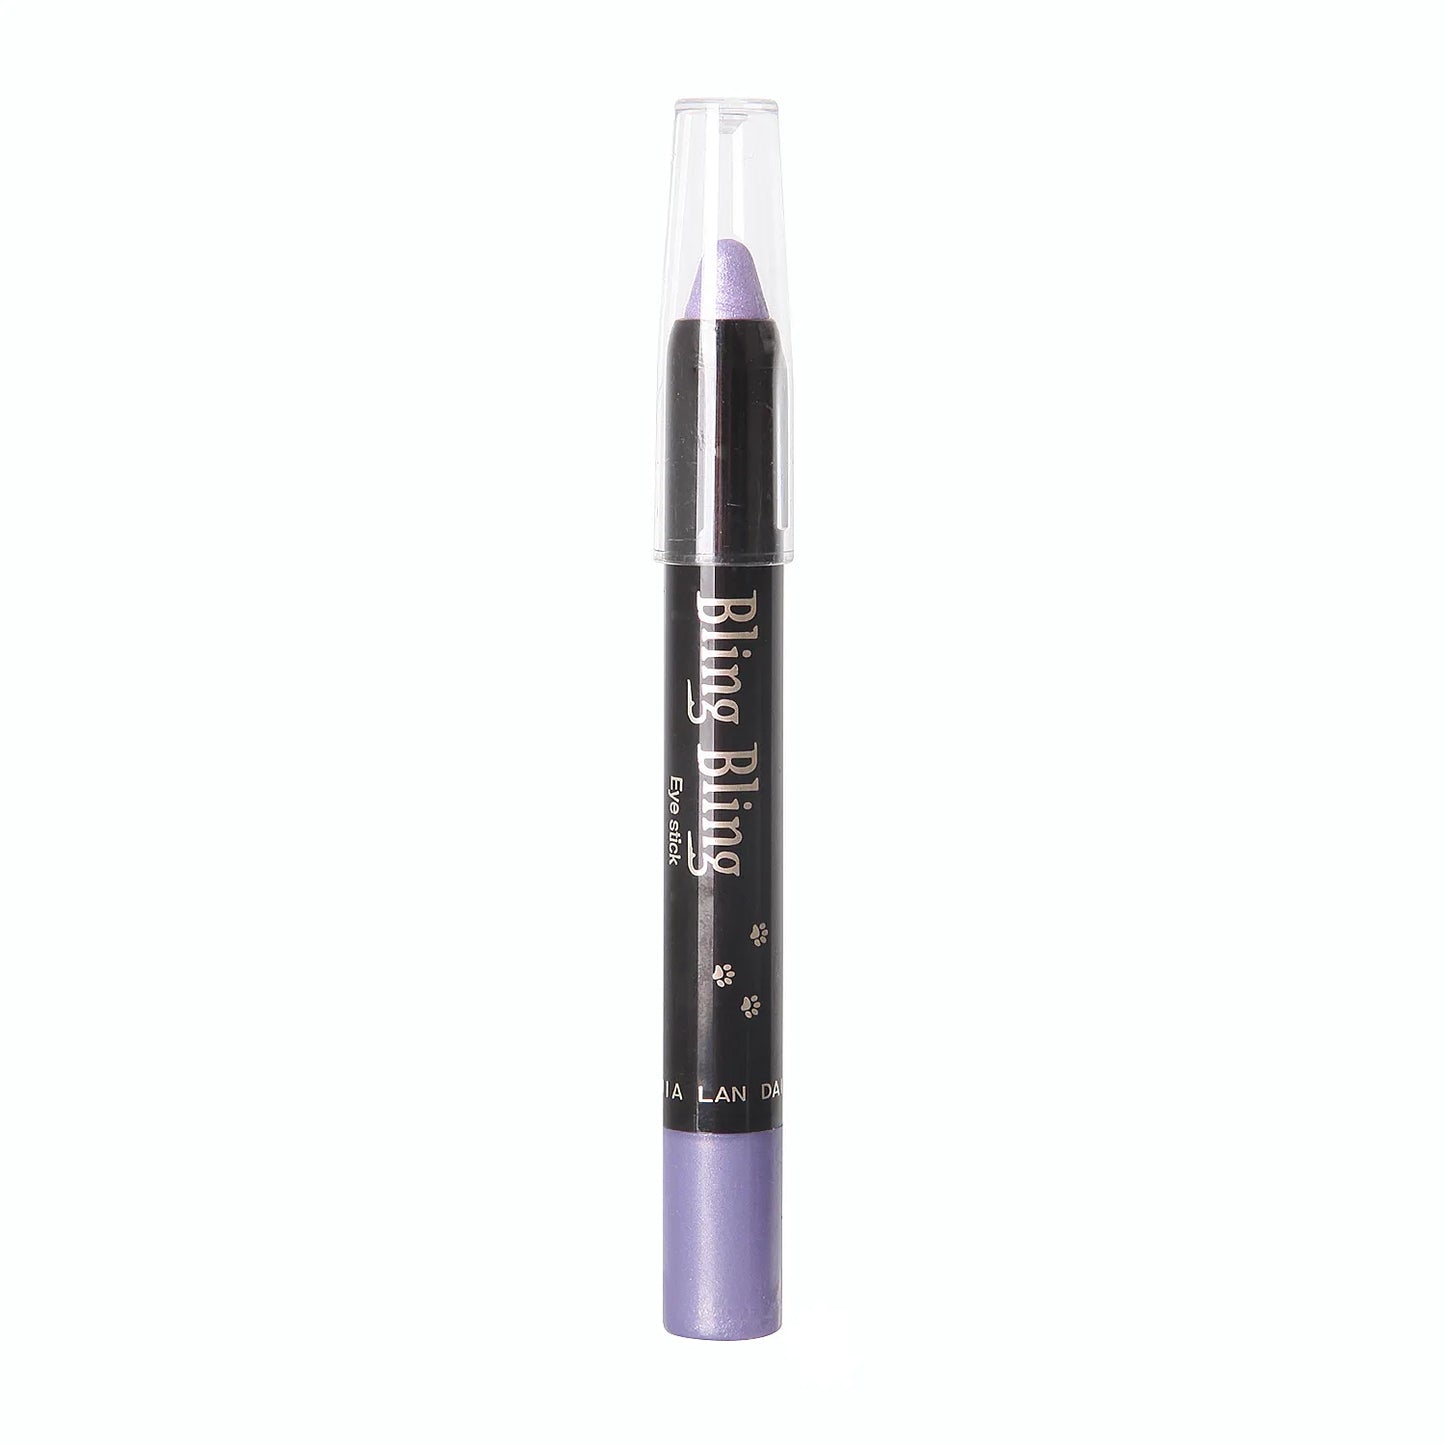 Waterproof Pearlescent Eyeshadow Pencil Stick